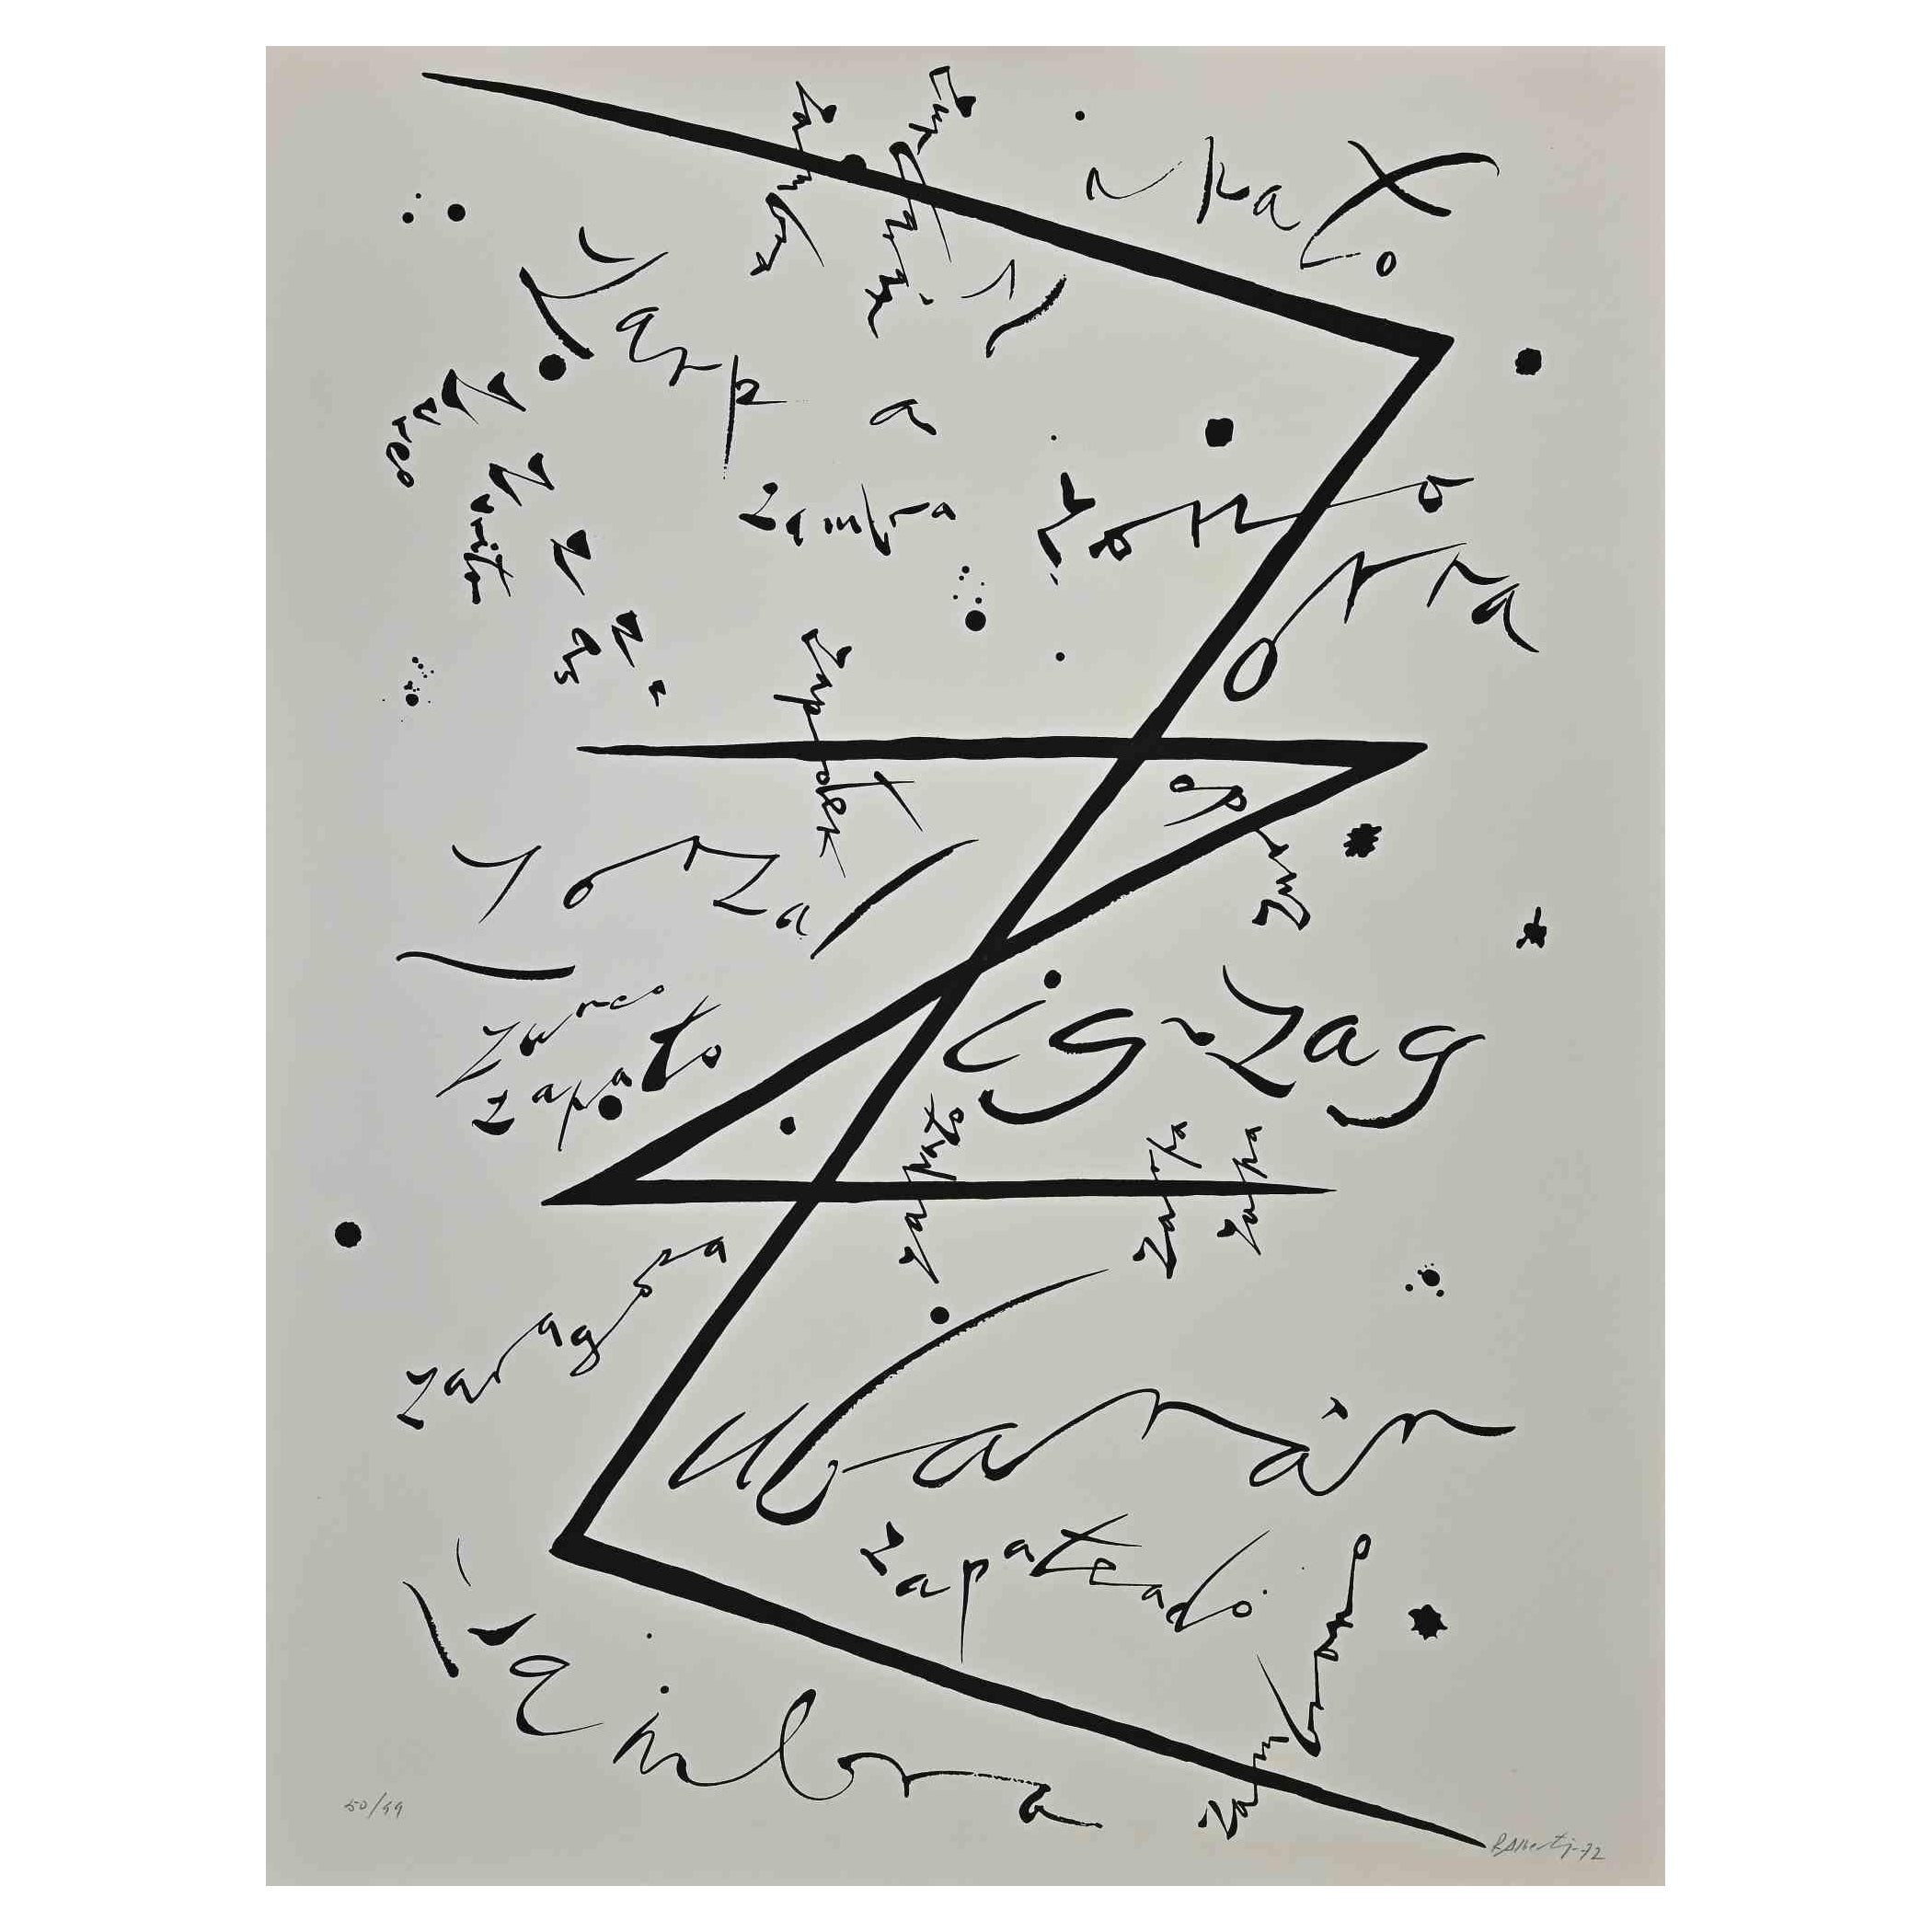 La lettre Z de la série Alphabet est une lithographie originale réalisée par Rafael Alberti en 1972.

Signé et daté à la main dans la marge inférieure.

Numéroté dans la marge inférieure. Edition 50/99

Bonnes conditions

L'œuvre représente la